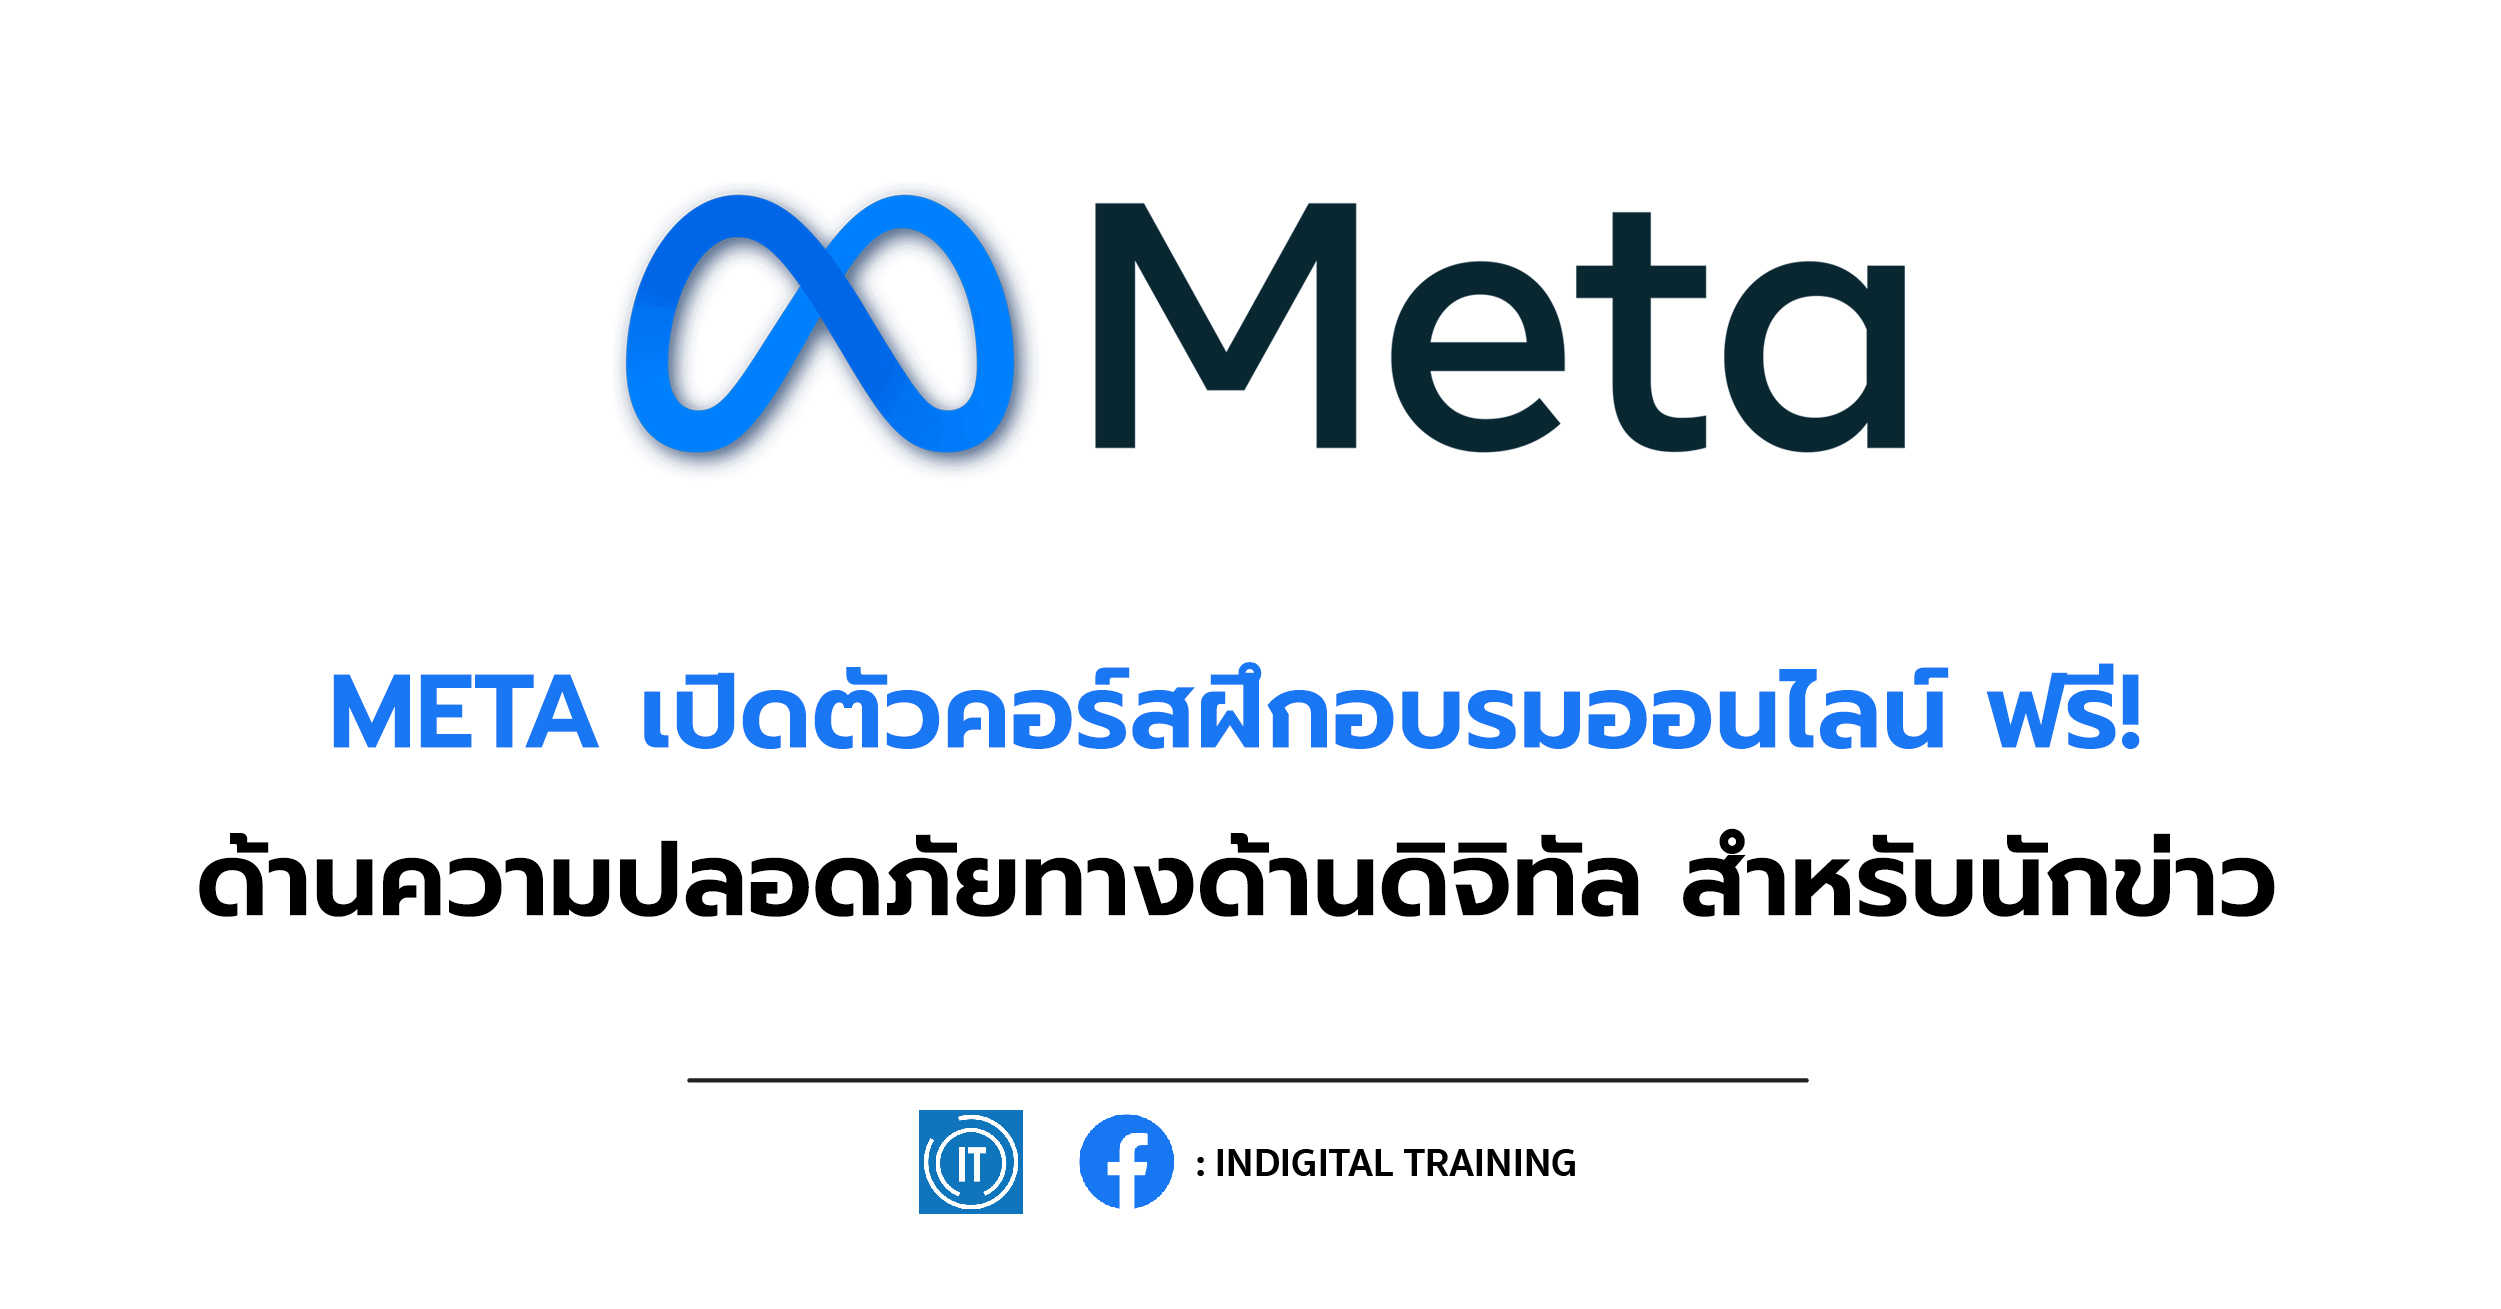 META เปิดตัวคอร์สฝึกอบรมออนไลน์ ฟรี! ด้านความปลอดภัยทางด้านดิจิทัล สำหรับนักข่าว